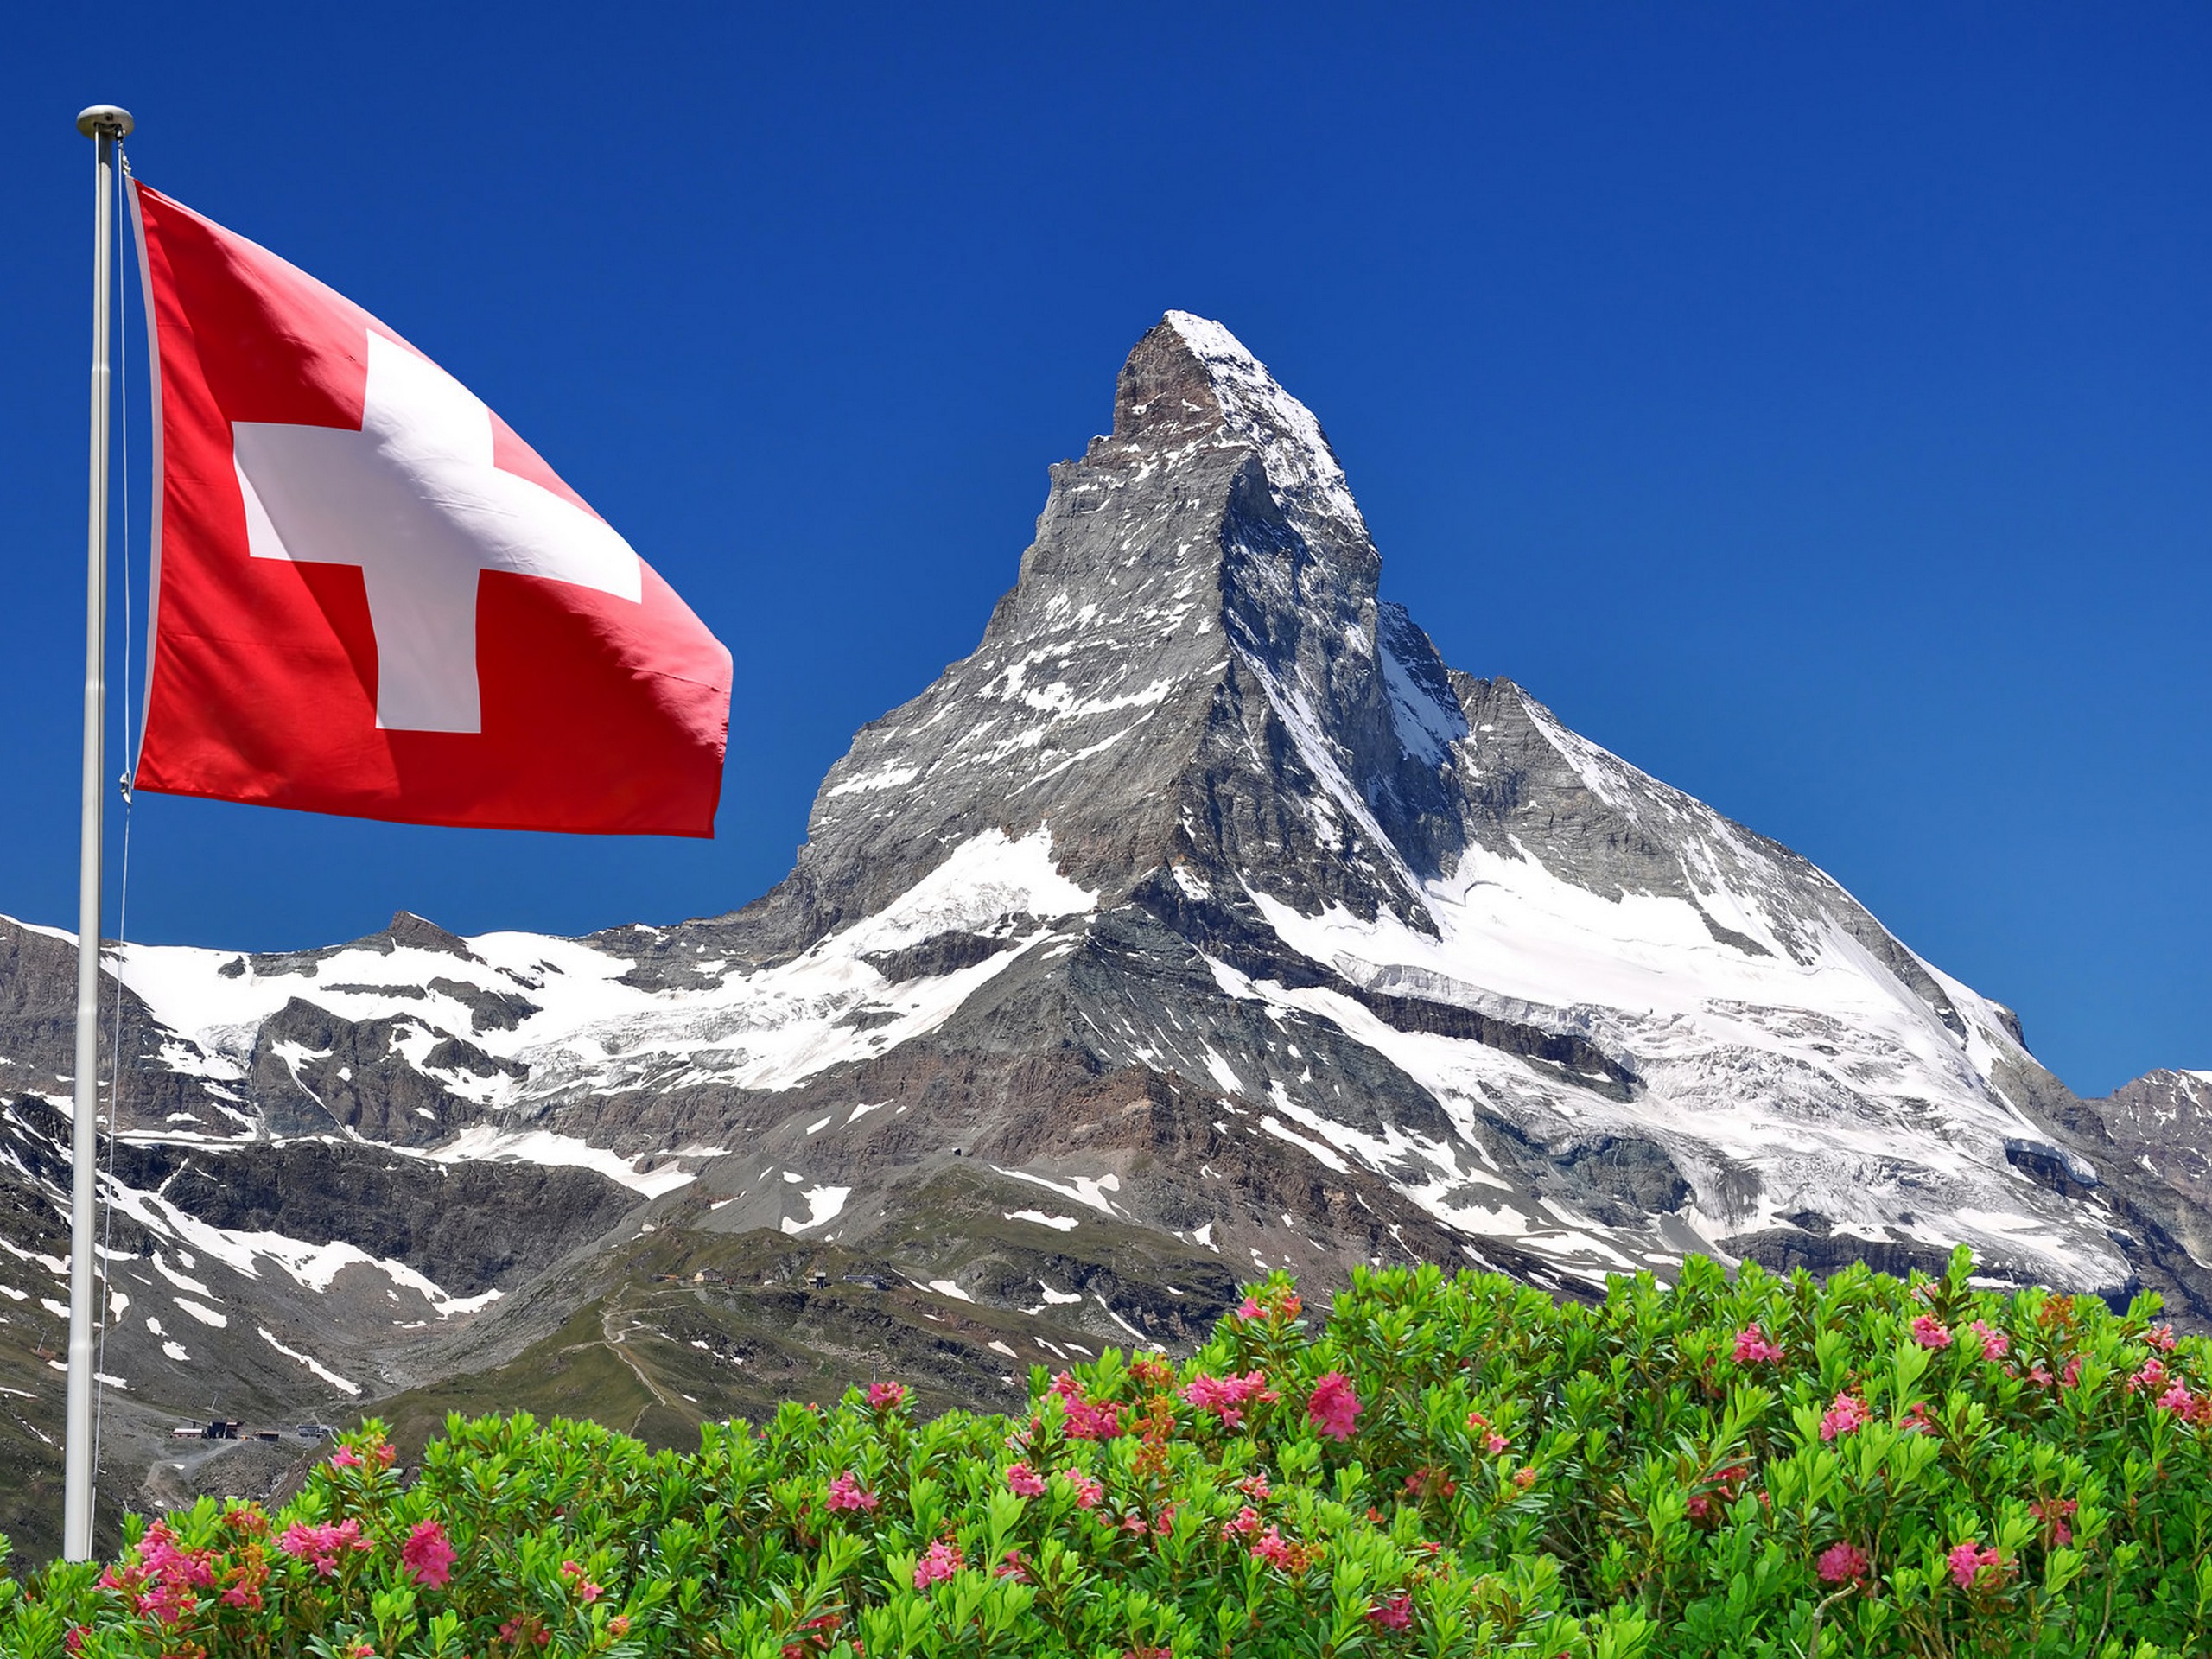 Swiss flag with a beautiful Matterhorn peak behind